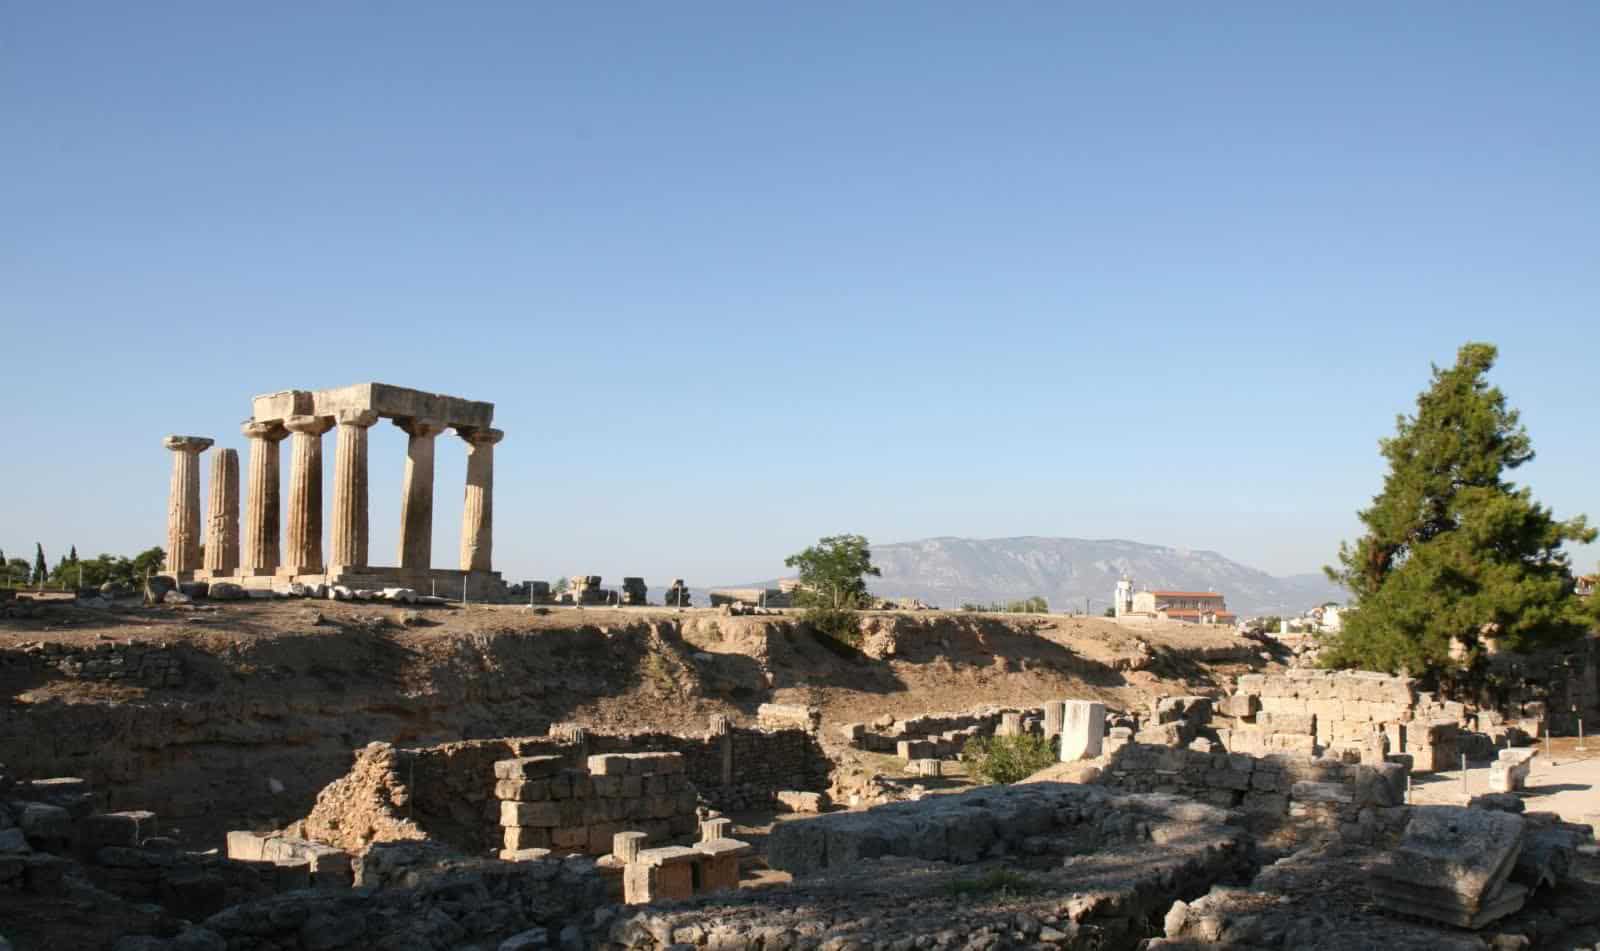 korinthos monuments temple apollon athens 2004 (2)